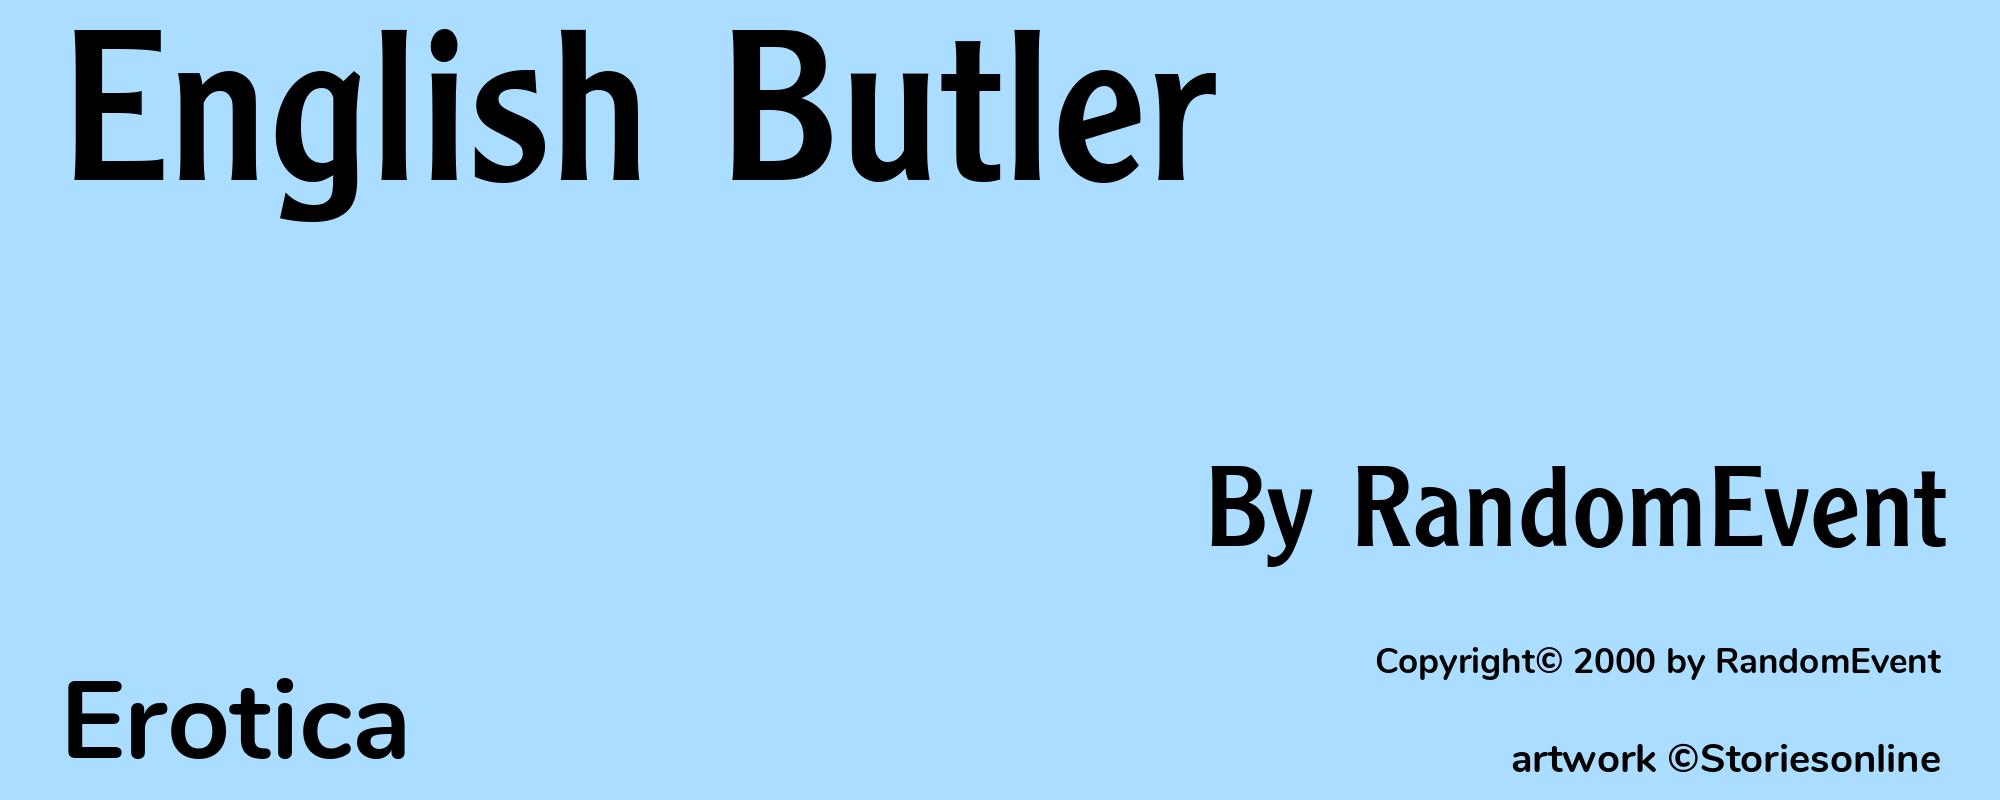 English Butler - Cover